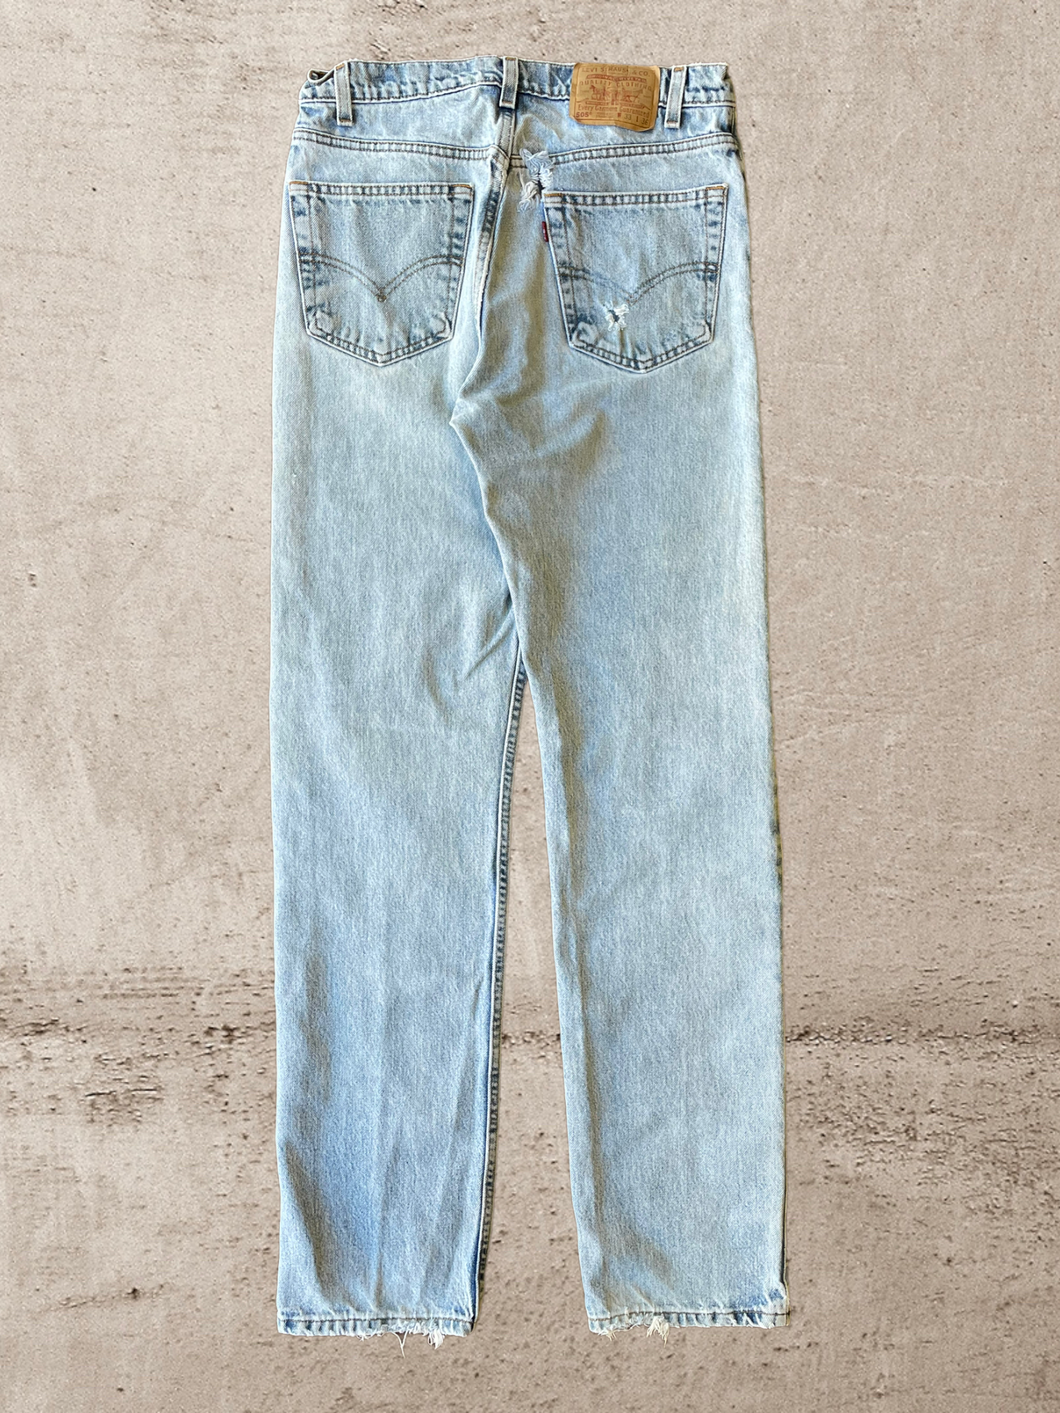 90s Levi 505 Light Wash Jeans -32x35